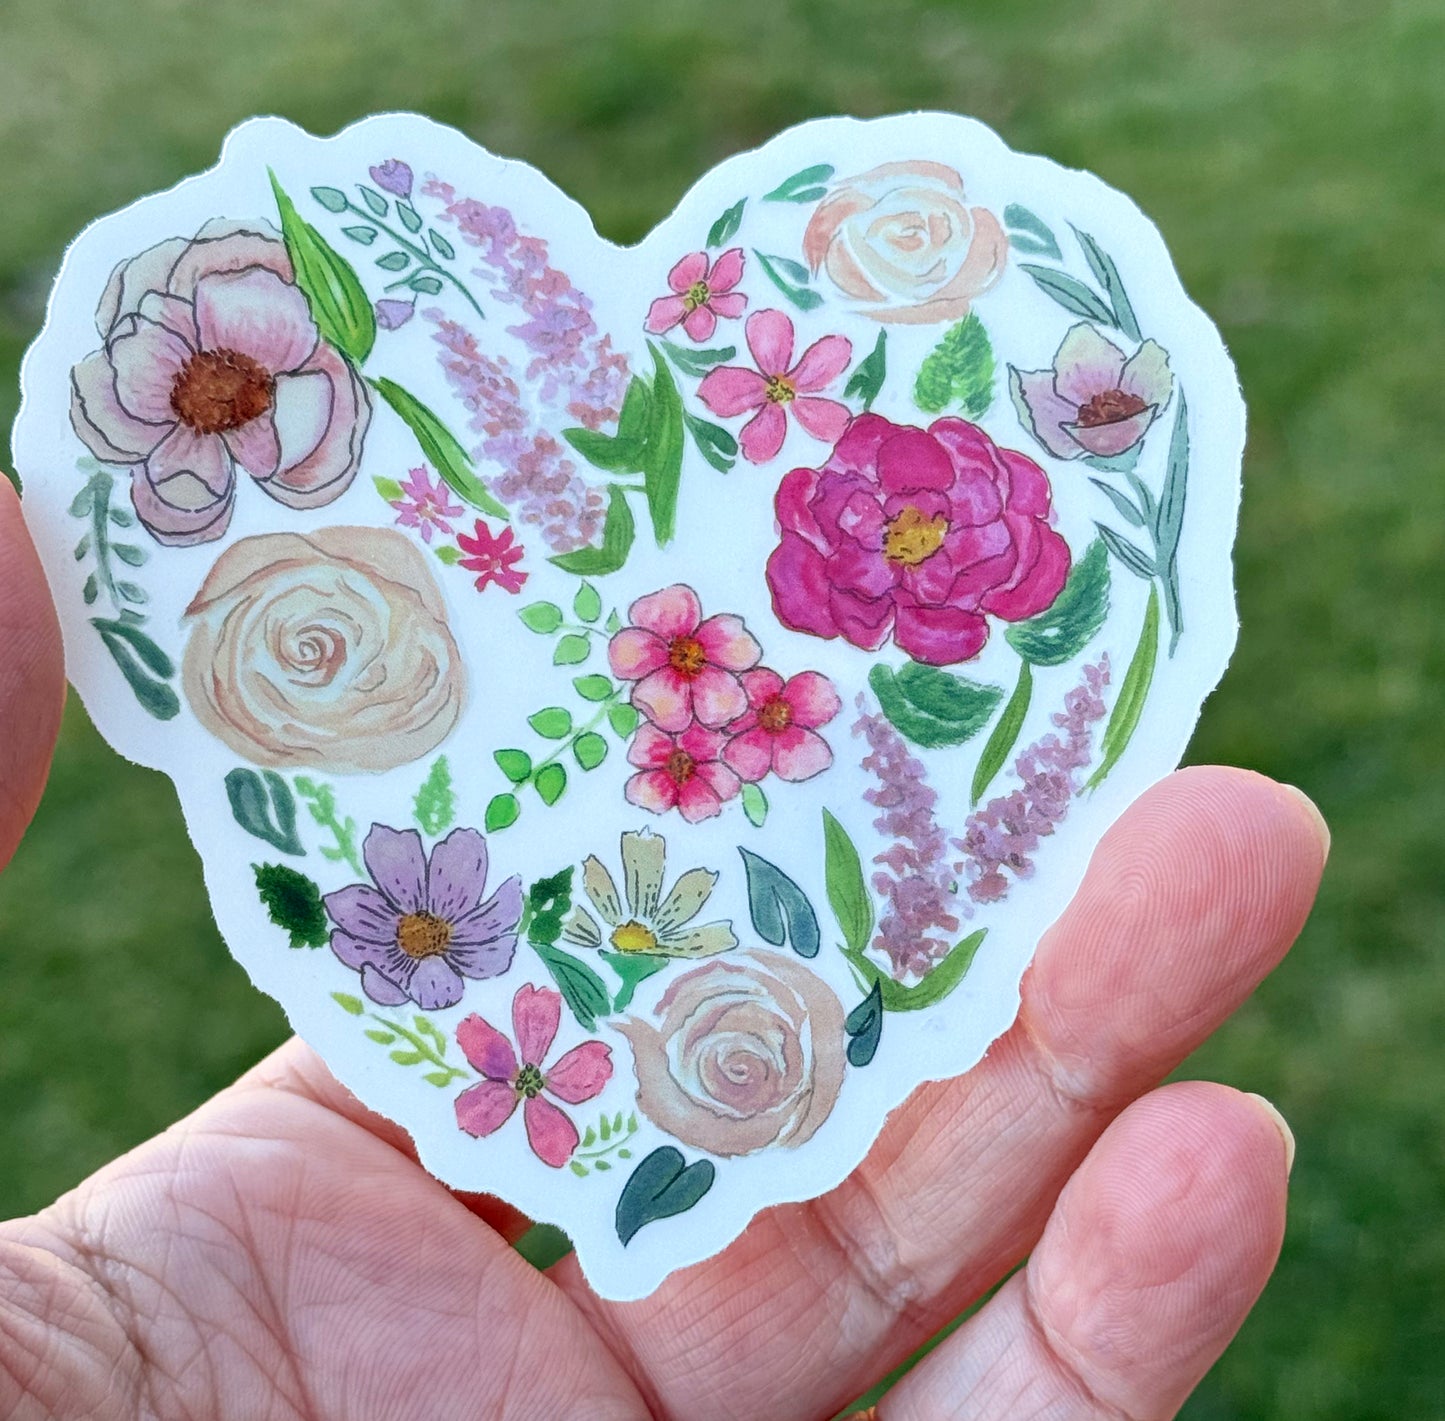 Watercolor Flower Heart floral Vinyl waterproof sticker